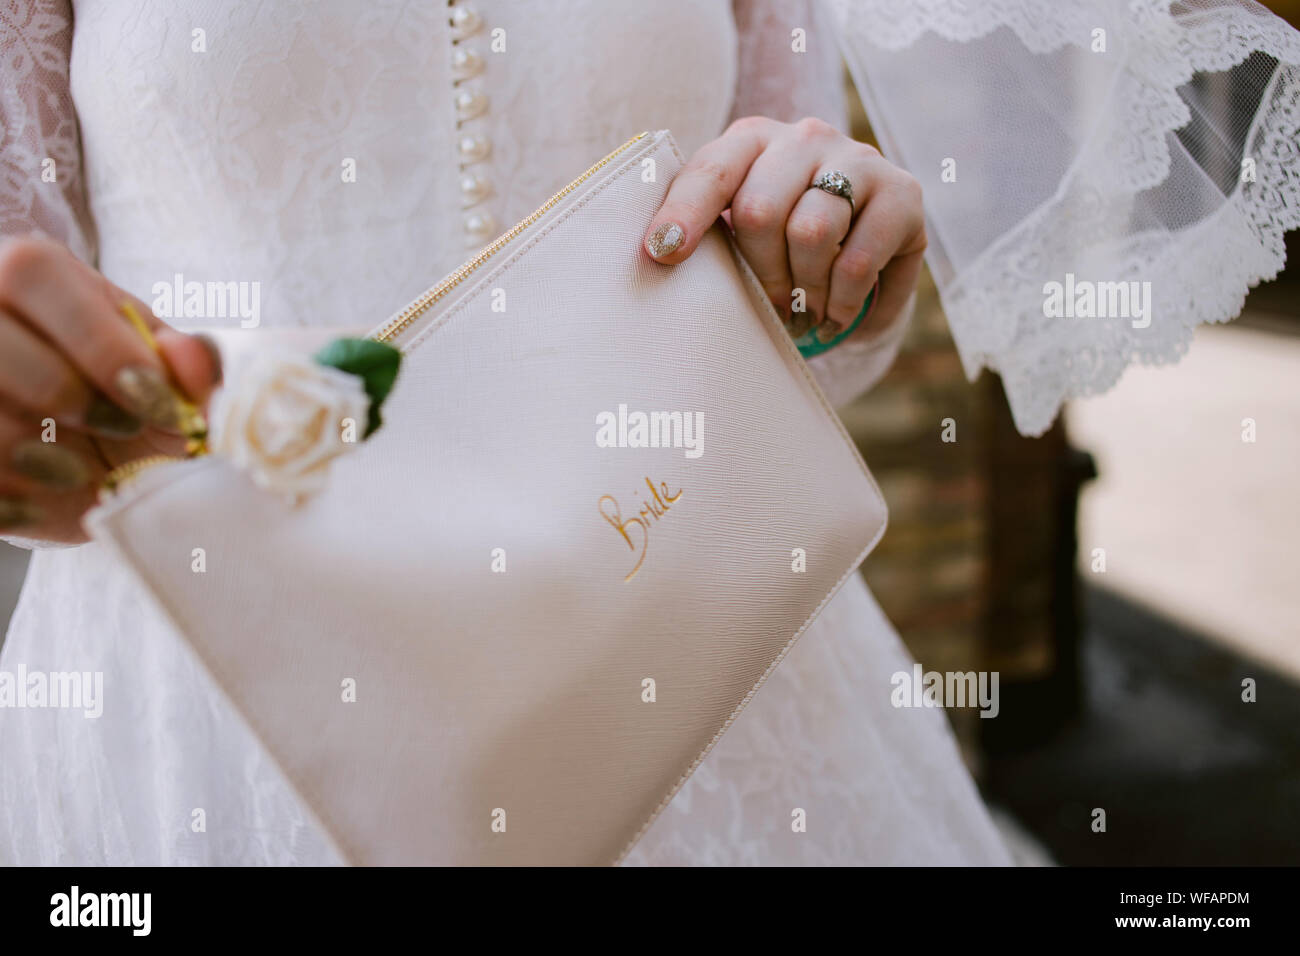 dettaglio della sposa il suo giorno di nozze tenendo una borsa con la sposa scritta su di esso Foto Stock